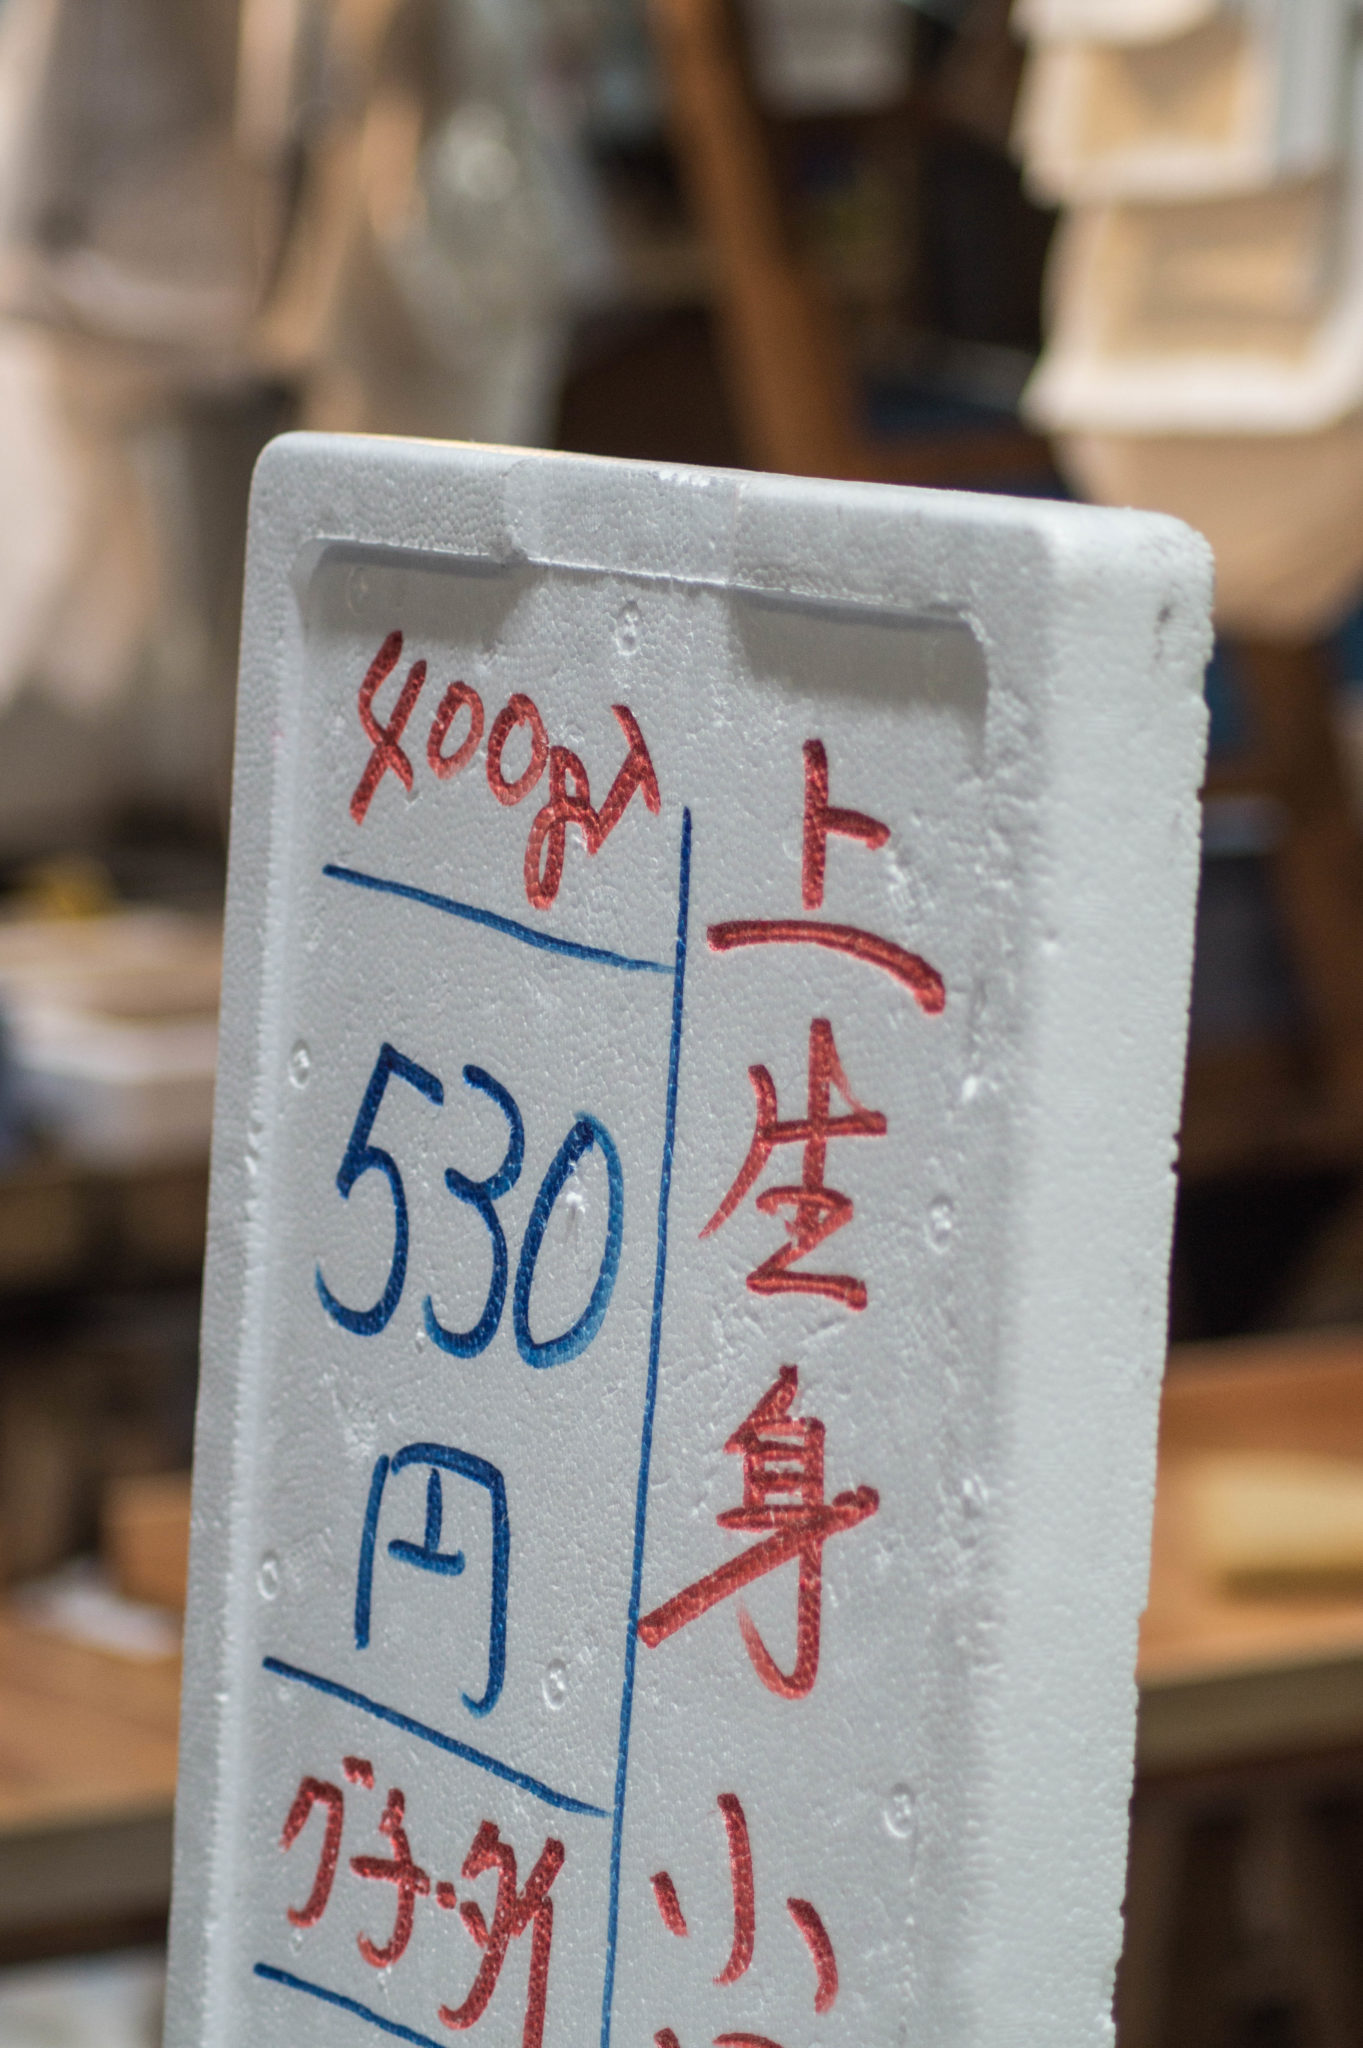 Unsere Tokio Fischmarkt Tipps findet ihr auf Travellers Archive.